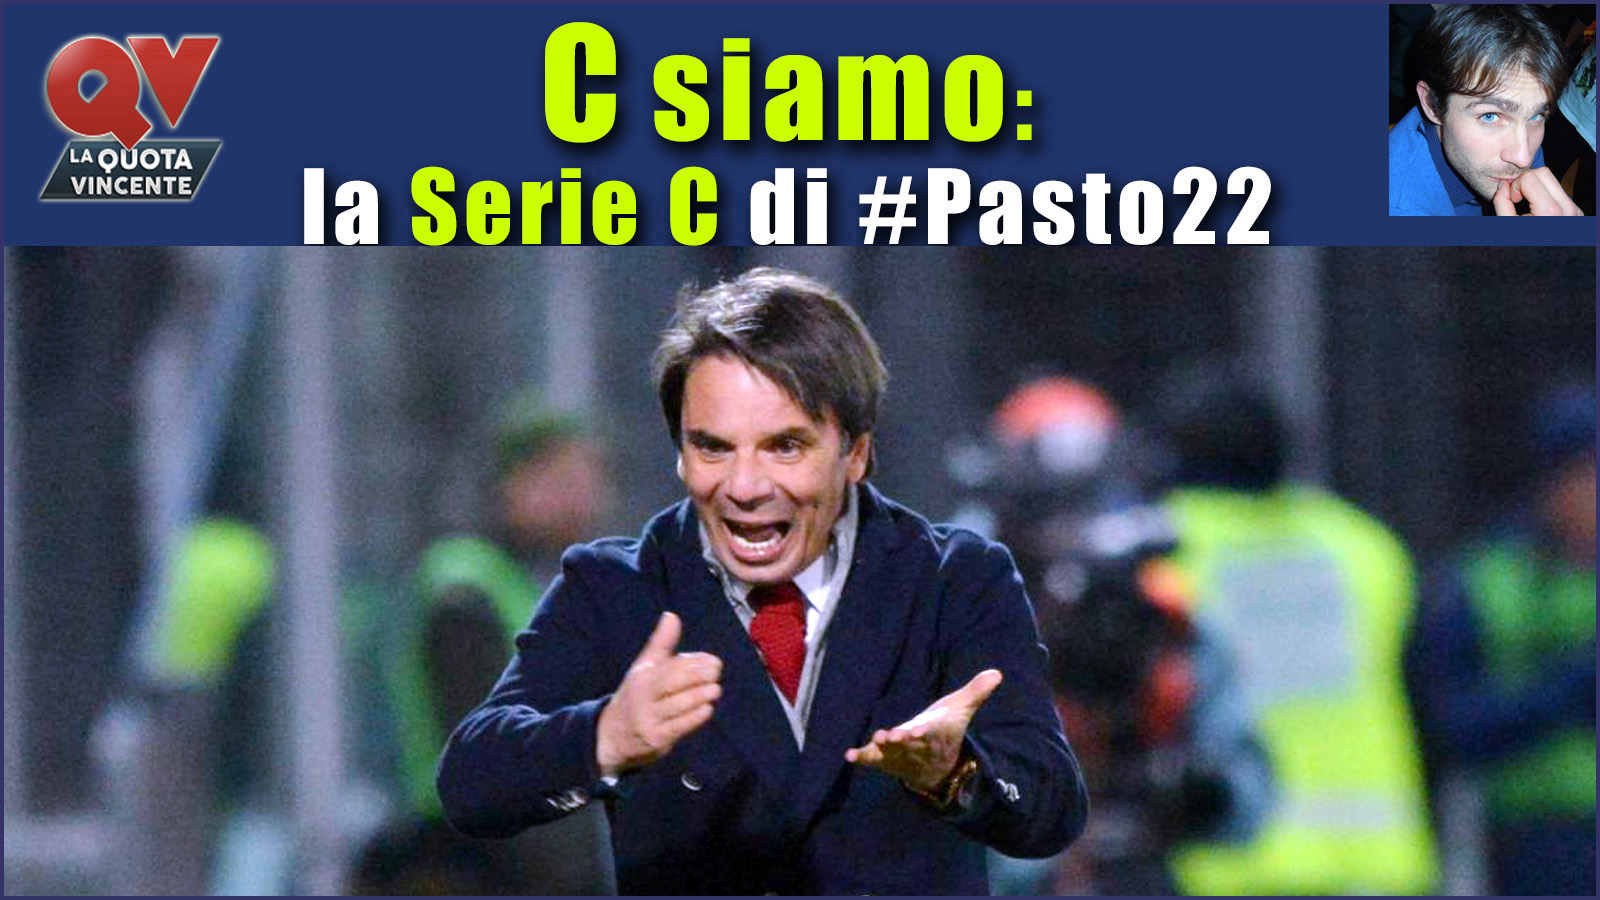 Pronostici Serie C sabato 16 dicembre: #Csiamo, il blog di #Pasto22